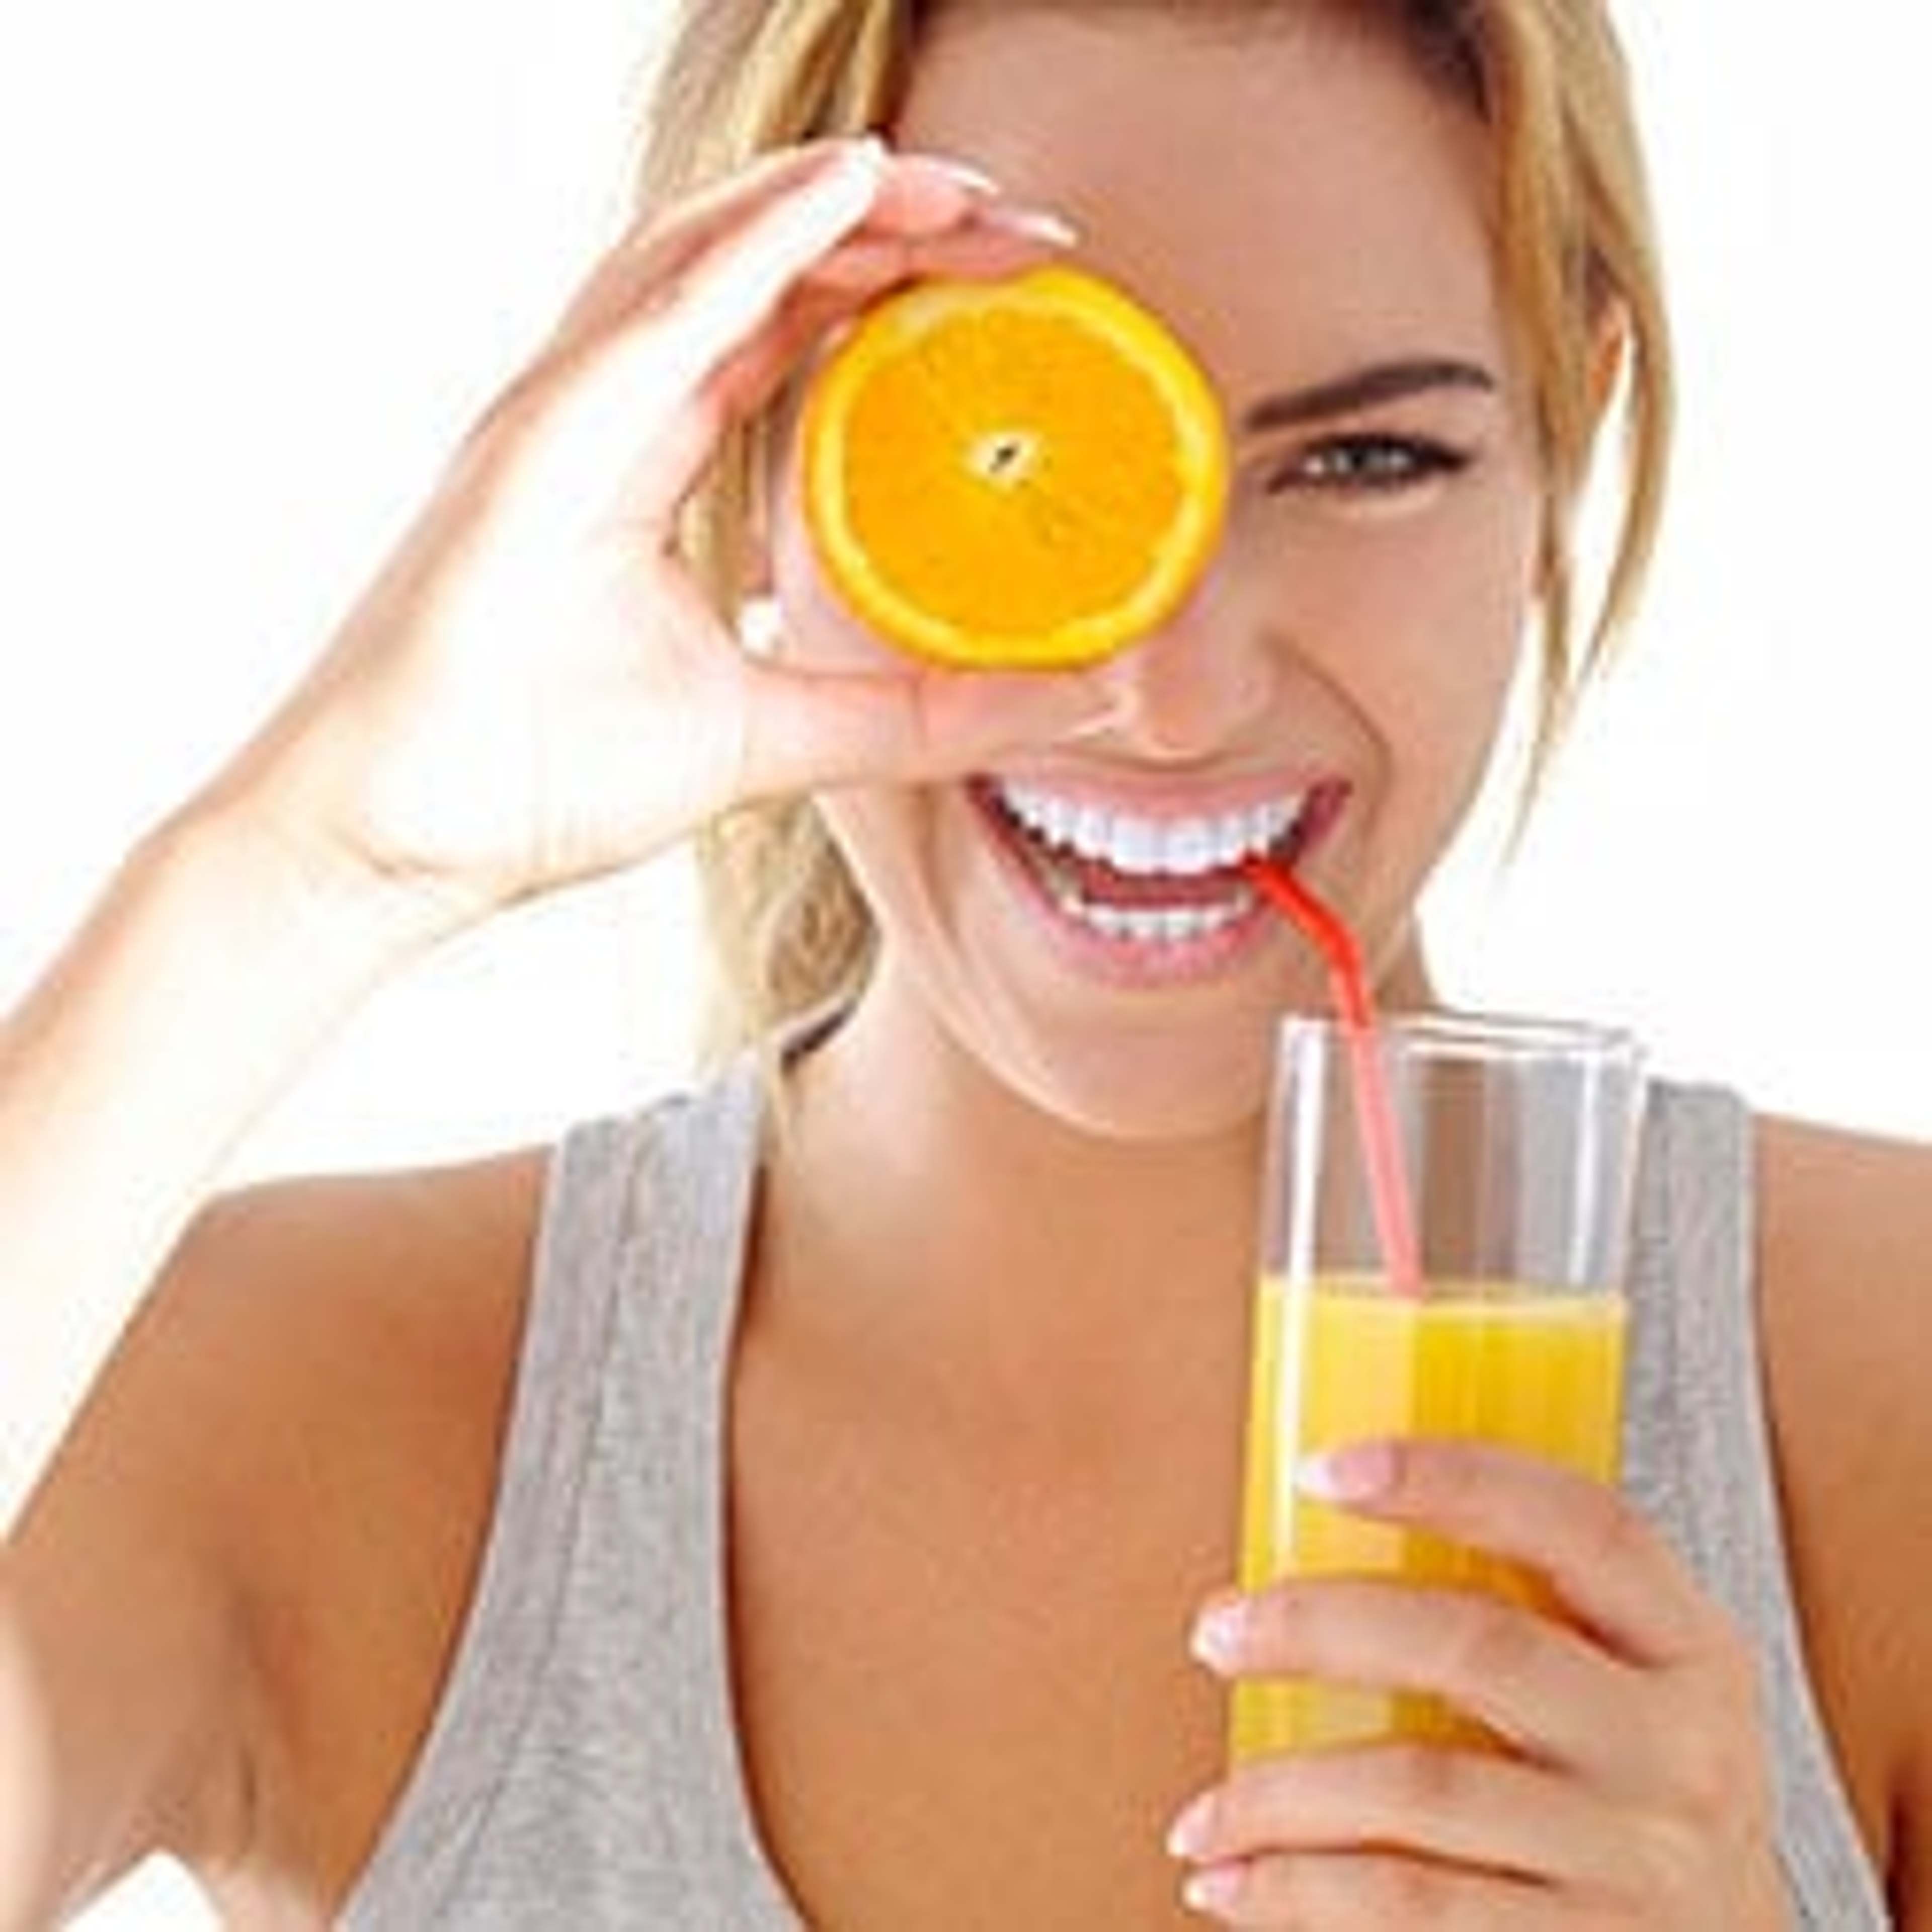 Ein Mangel an Vitamin C kann sich in Form von häufigen Erkältungen, schwachem Bindegewebe, Zahnfleischbluten und schlecht heilenden Wunden äußern.